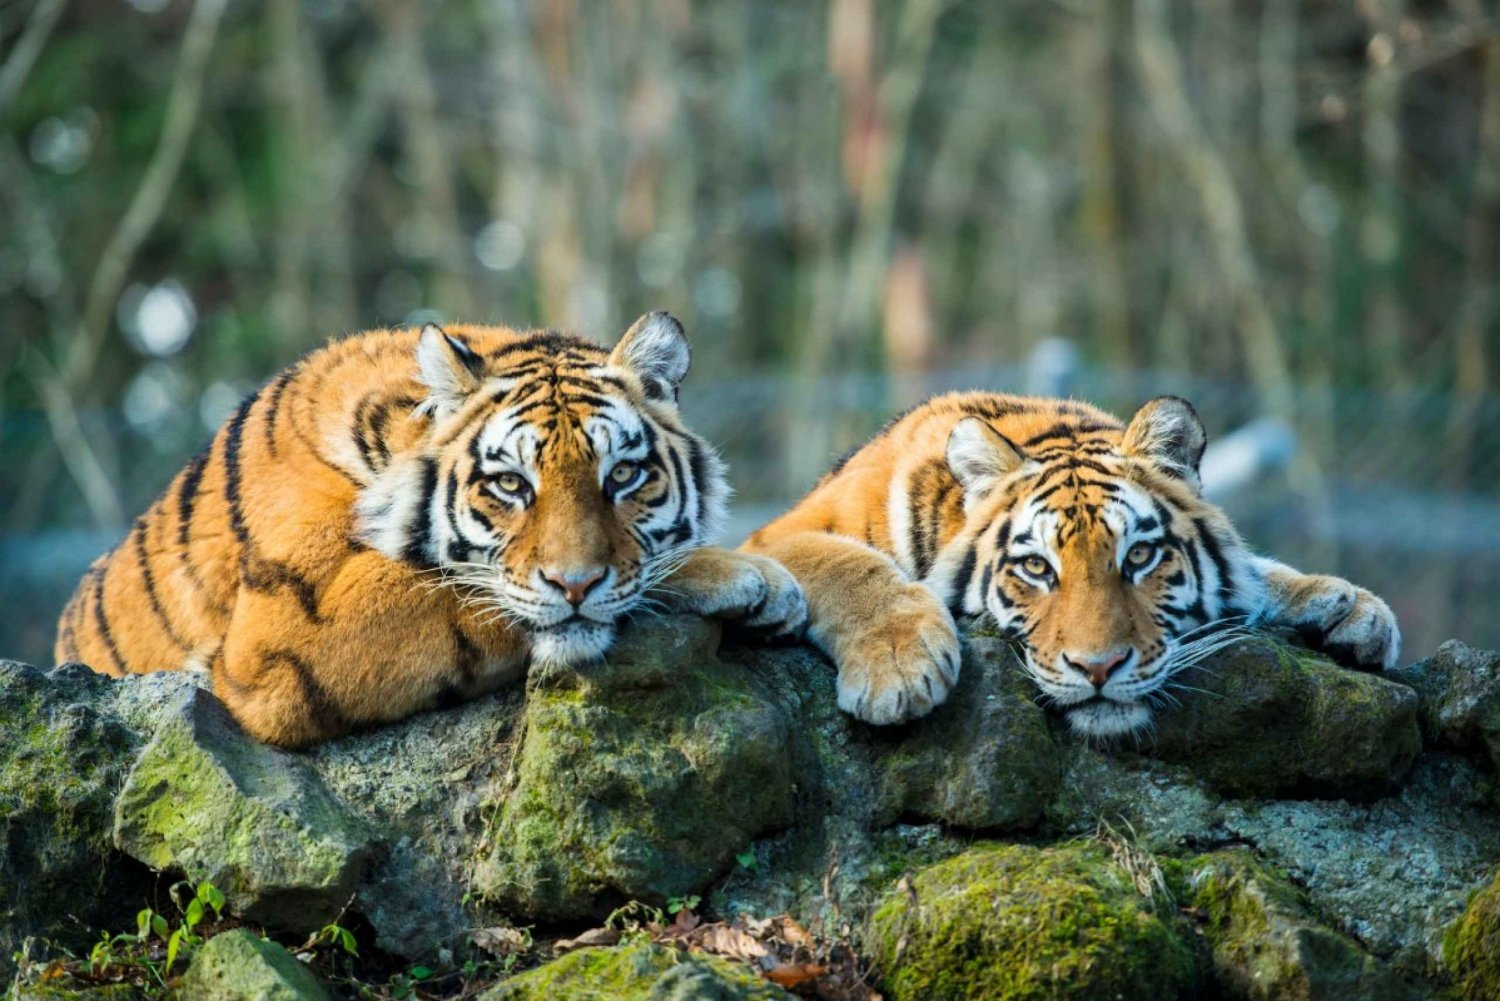 Delhistä: 5-päiväinen Kultainen kolmio & Ranthambore Tiger Safari